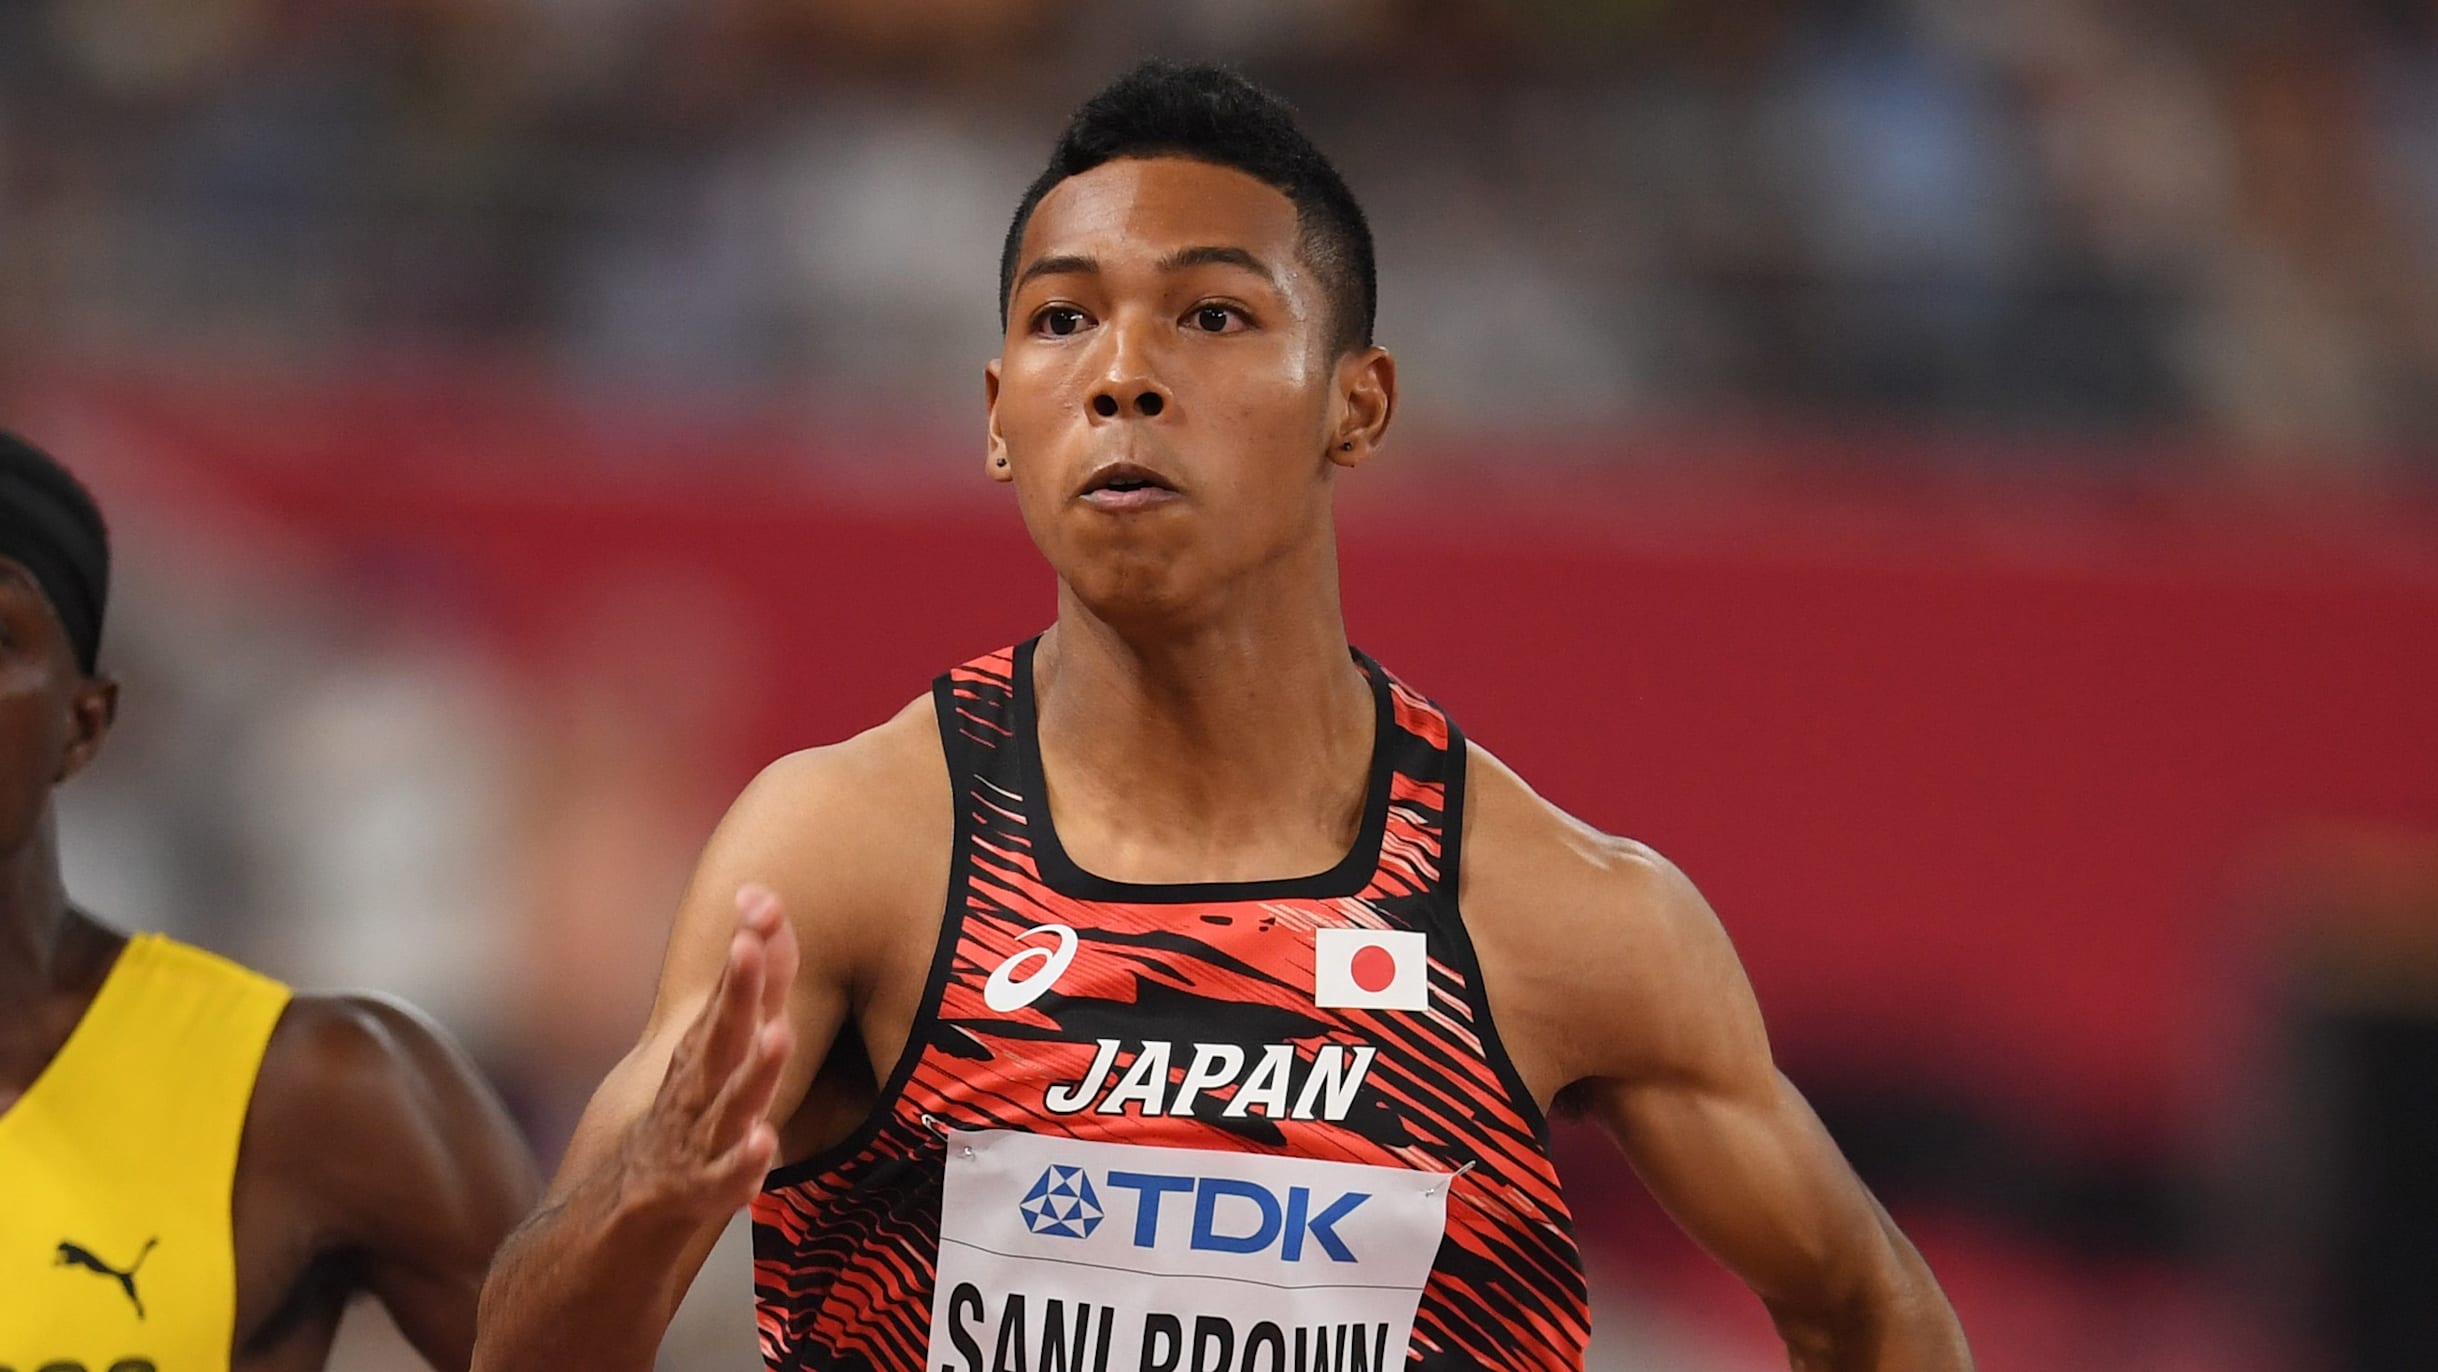 サニブラウン、日本人2人目の9秒台と日本新記録更新の軌跡